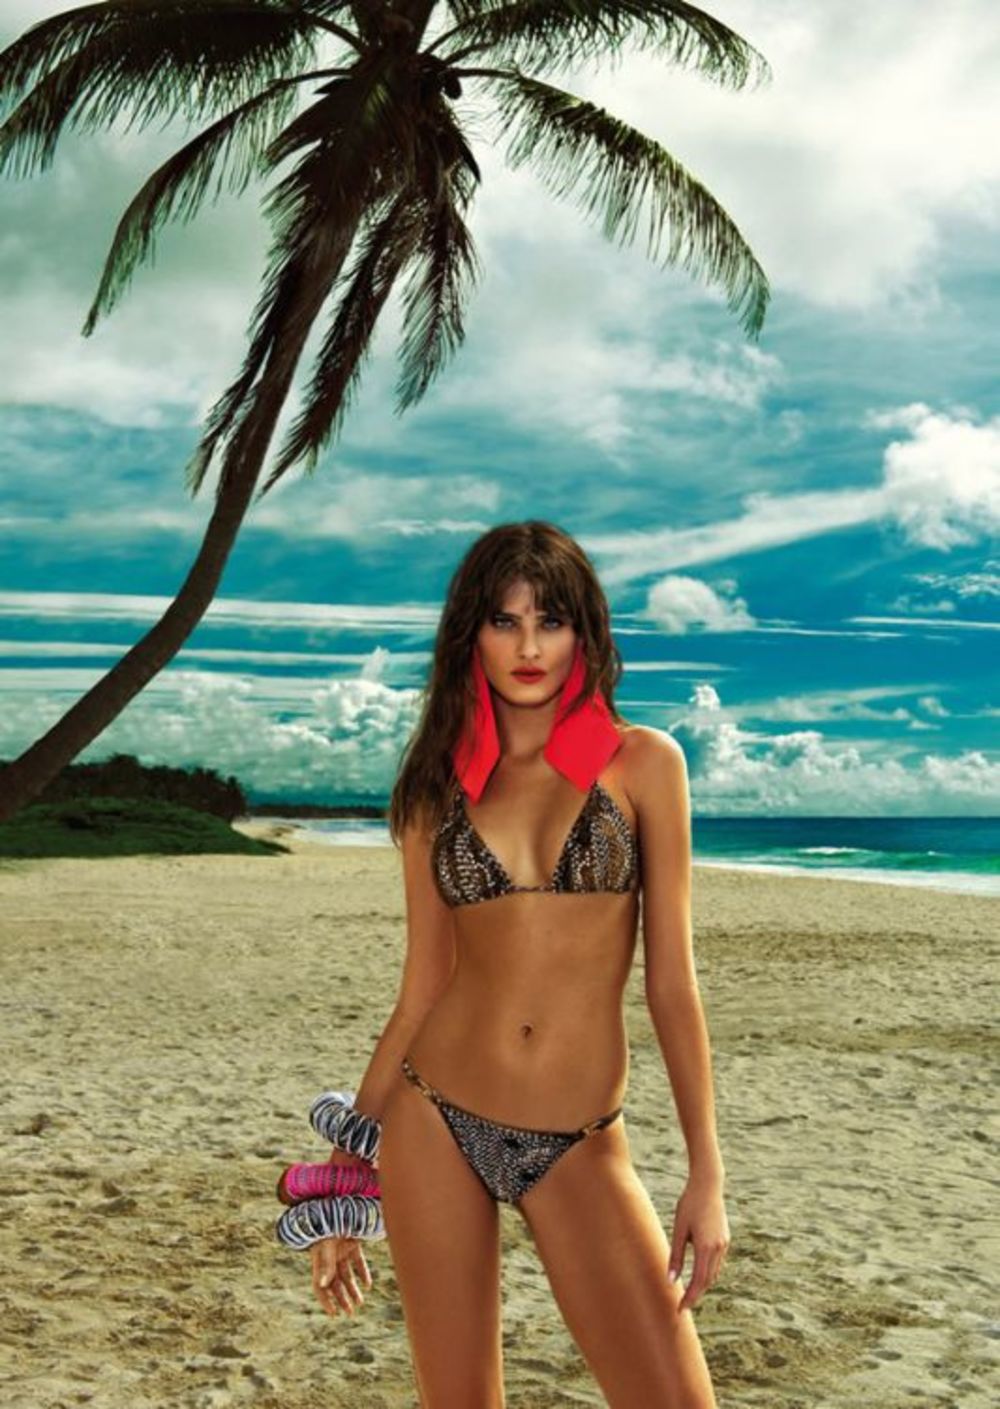 Brazilska lepotica Izabeli Fontana sigurno će sa lakoćom uneti malo vreline u sumorne jesenje dane. To nije ni čudo s obzirom na to kakve ženske atribute poseduje. Otkrila ih je pozirajući u bikinijima kompanije Morena Rosa Beach.